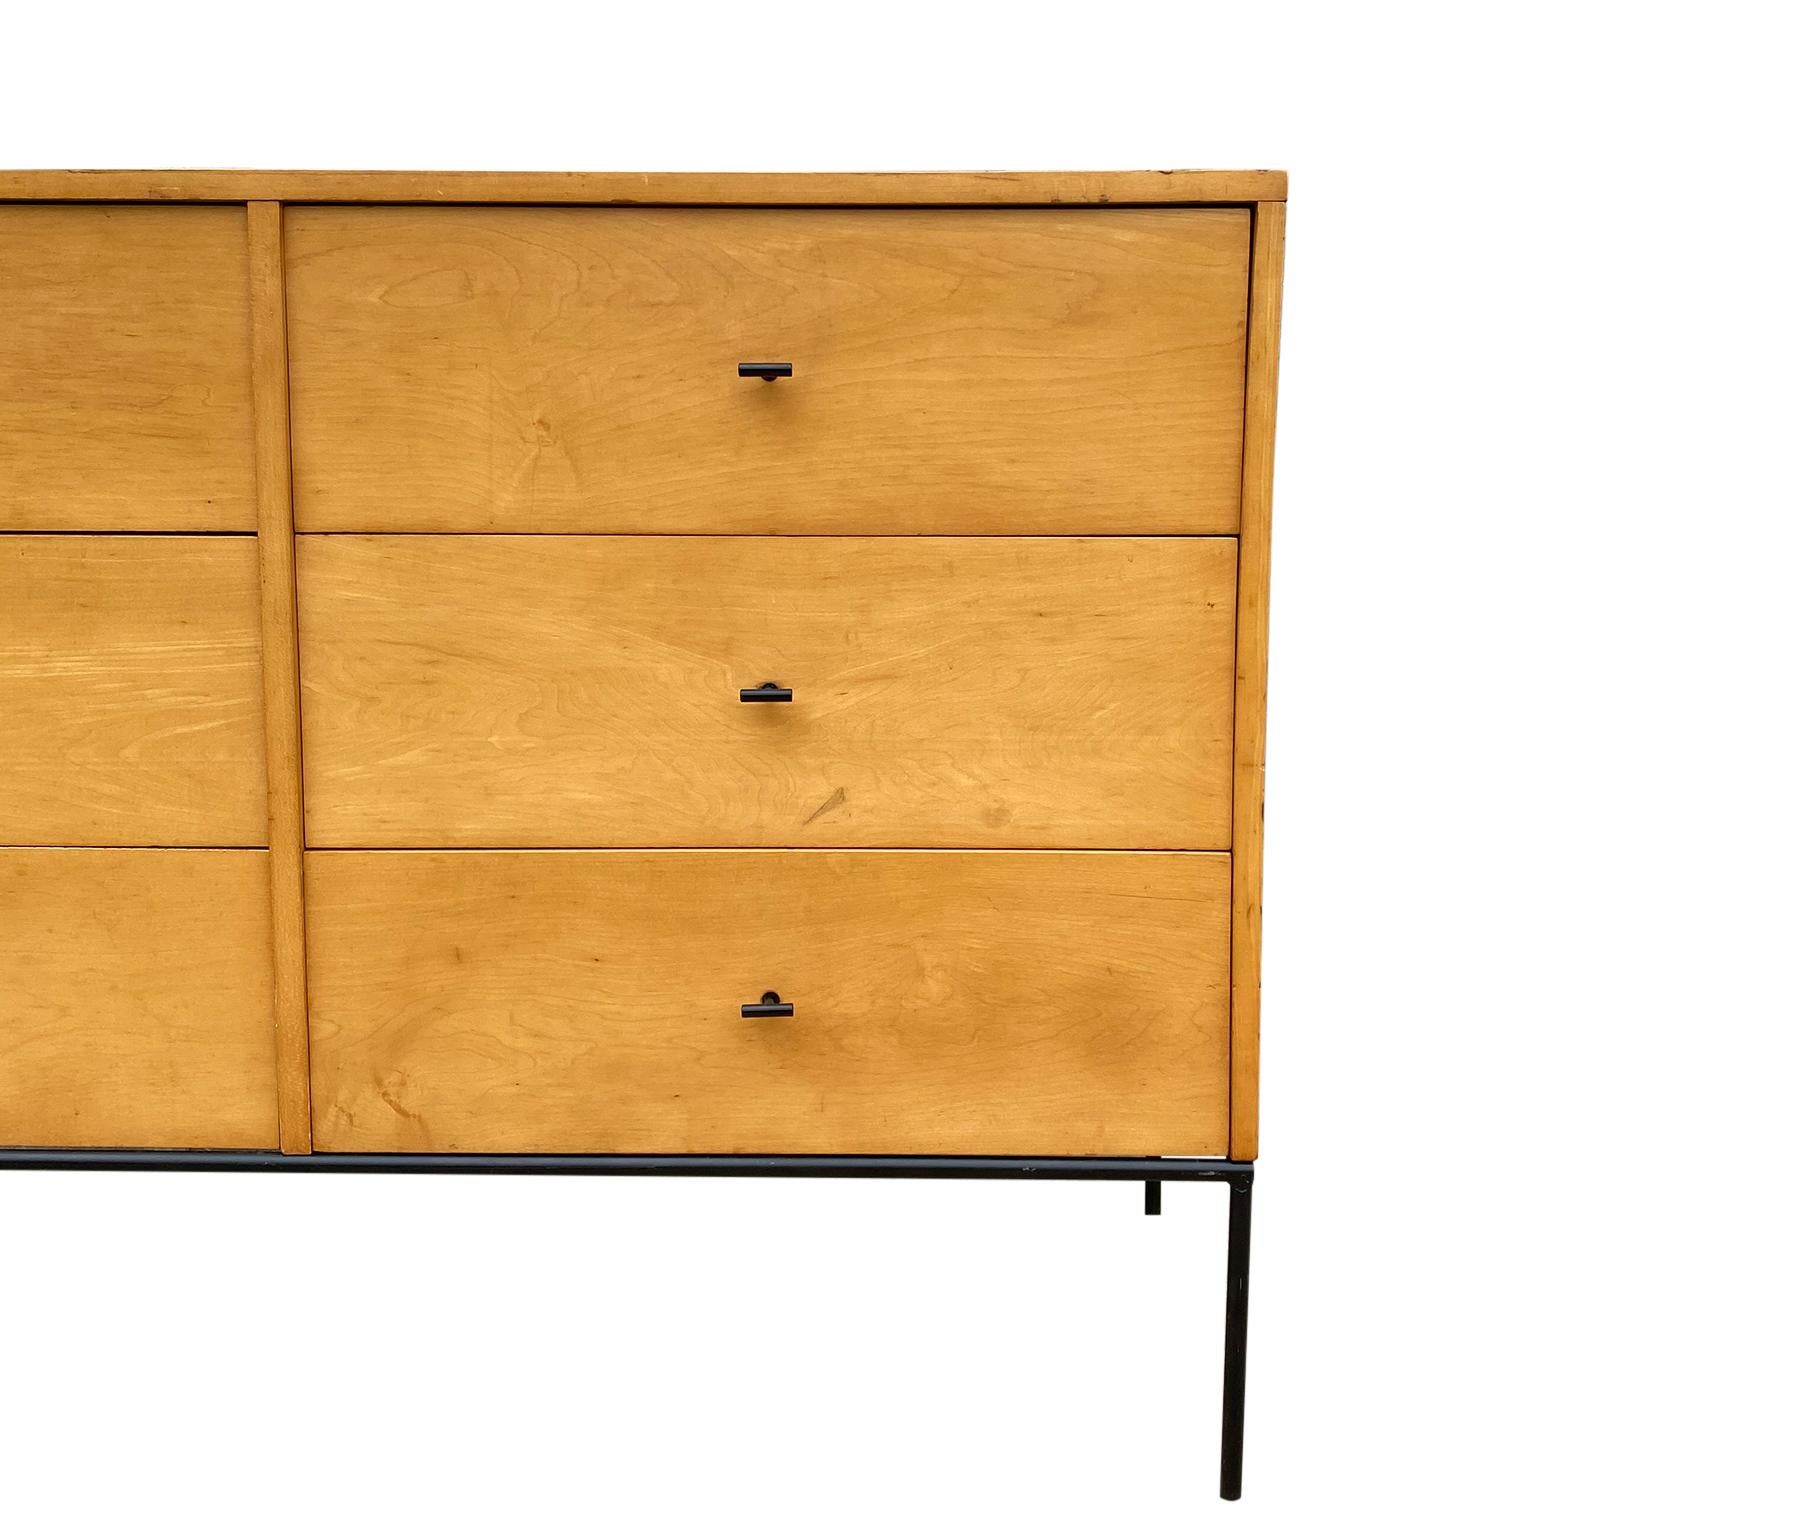 Woodwork Midcentury Paul McCobb 6 Drawer Dresser Credenza #1509 Blonde Maple T Pulls